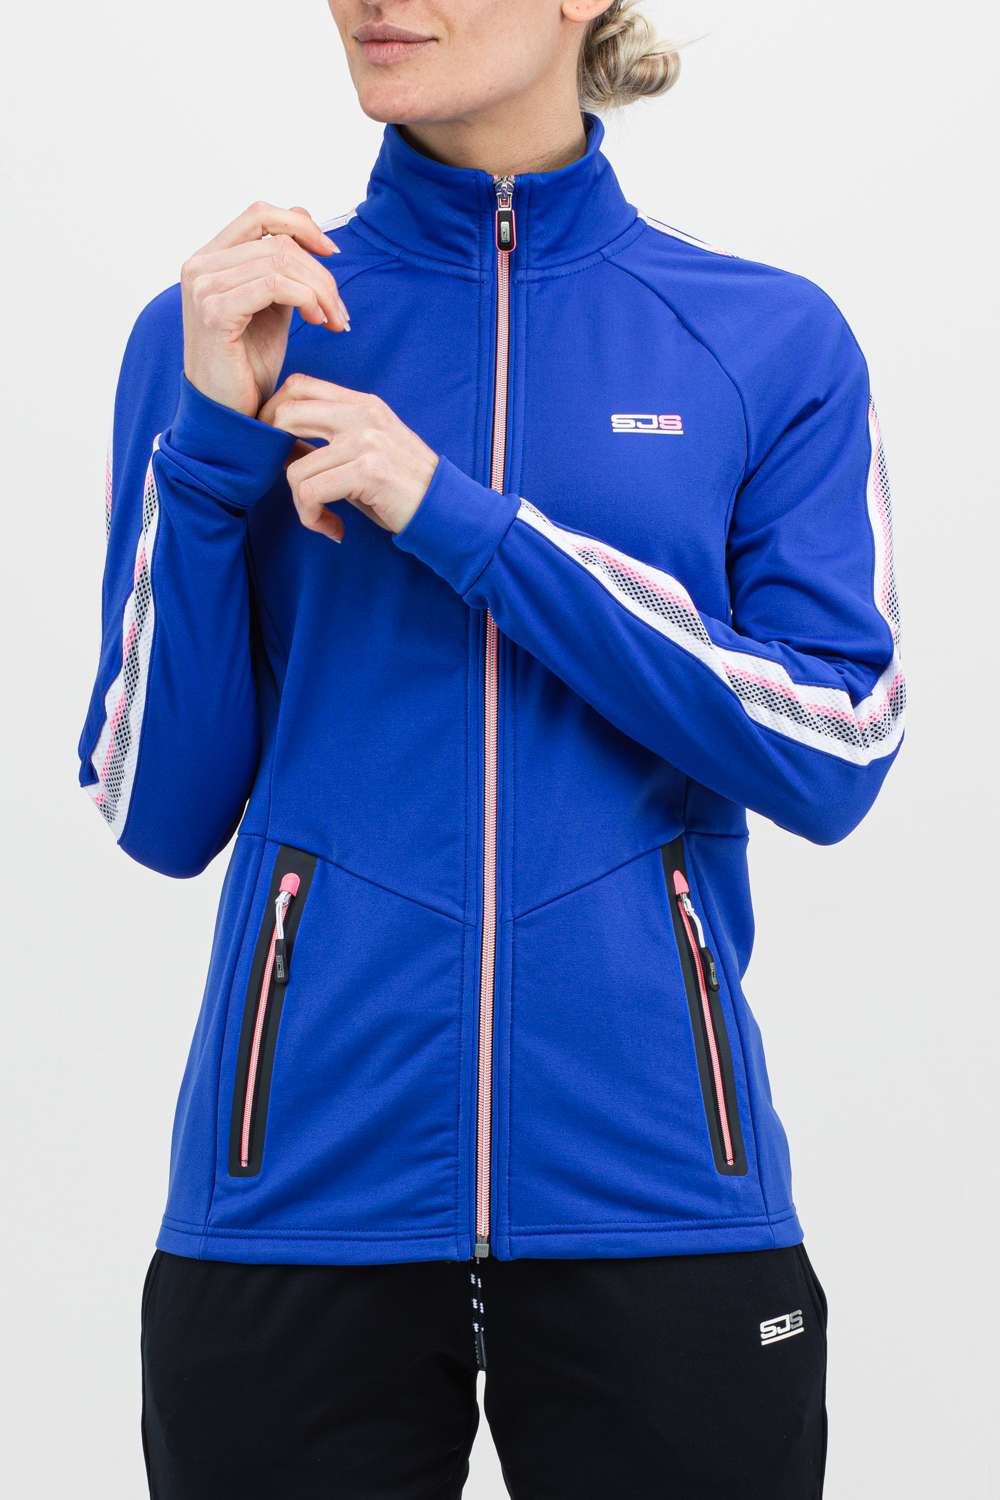 Sjeng Sports Nara Woven Jacket 